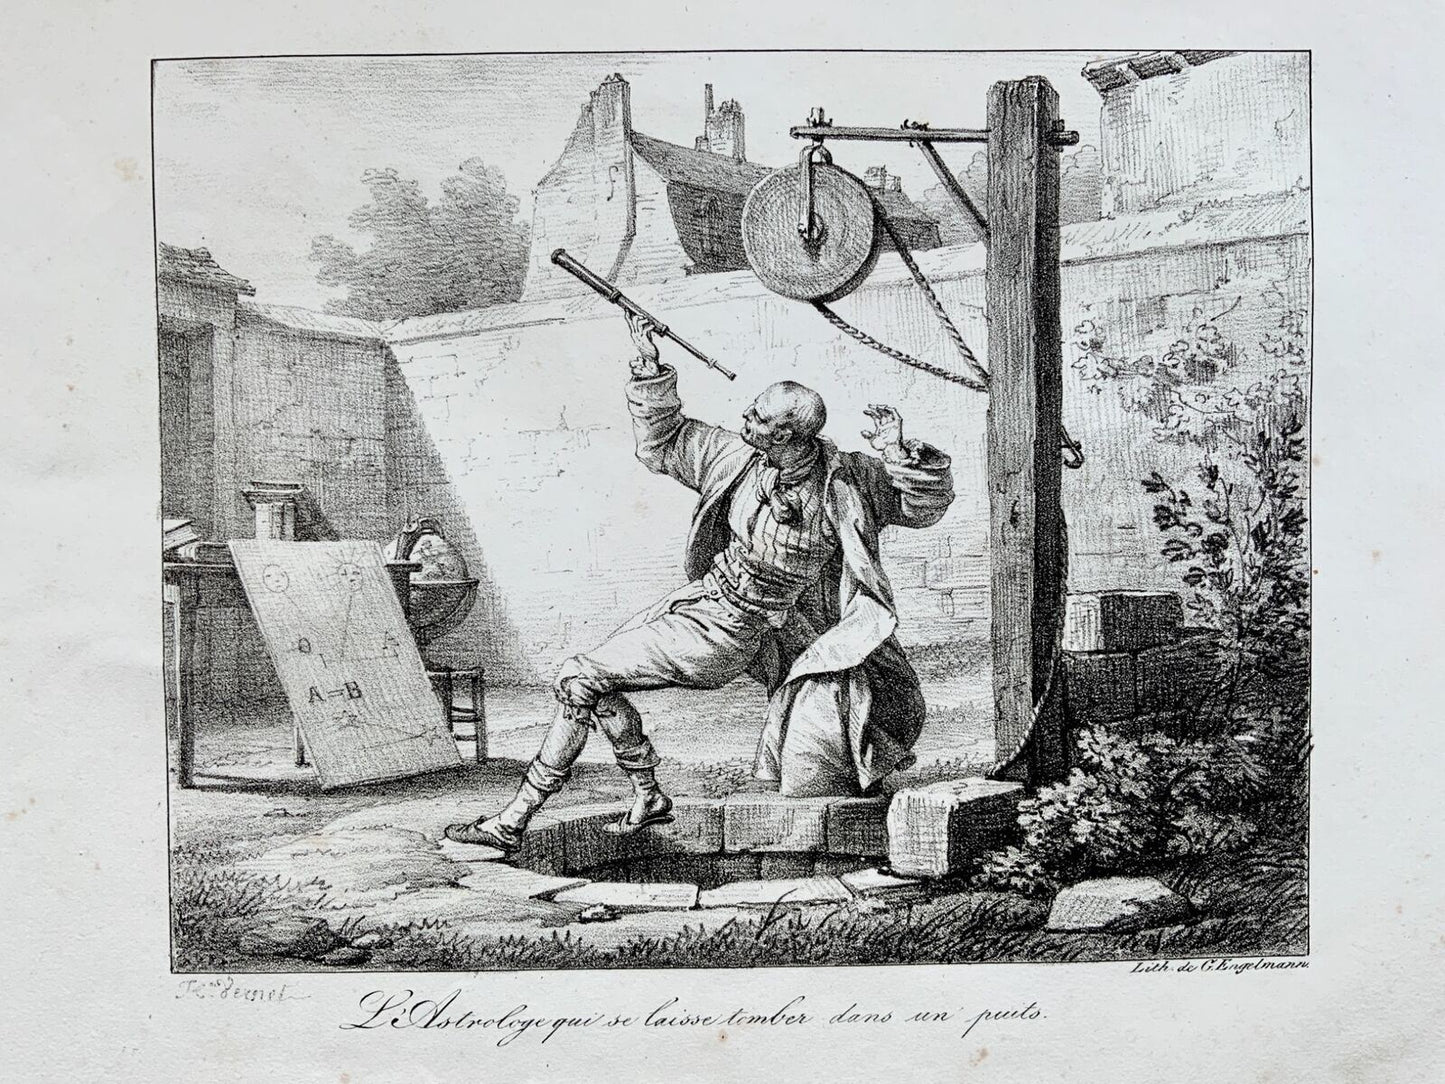 1818 Astronome, Vernet (b1758), Engelmann, incunable de lithographie, folio